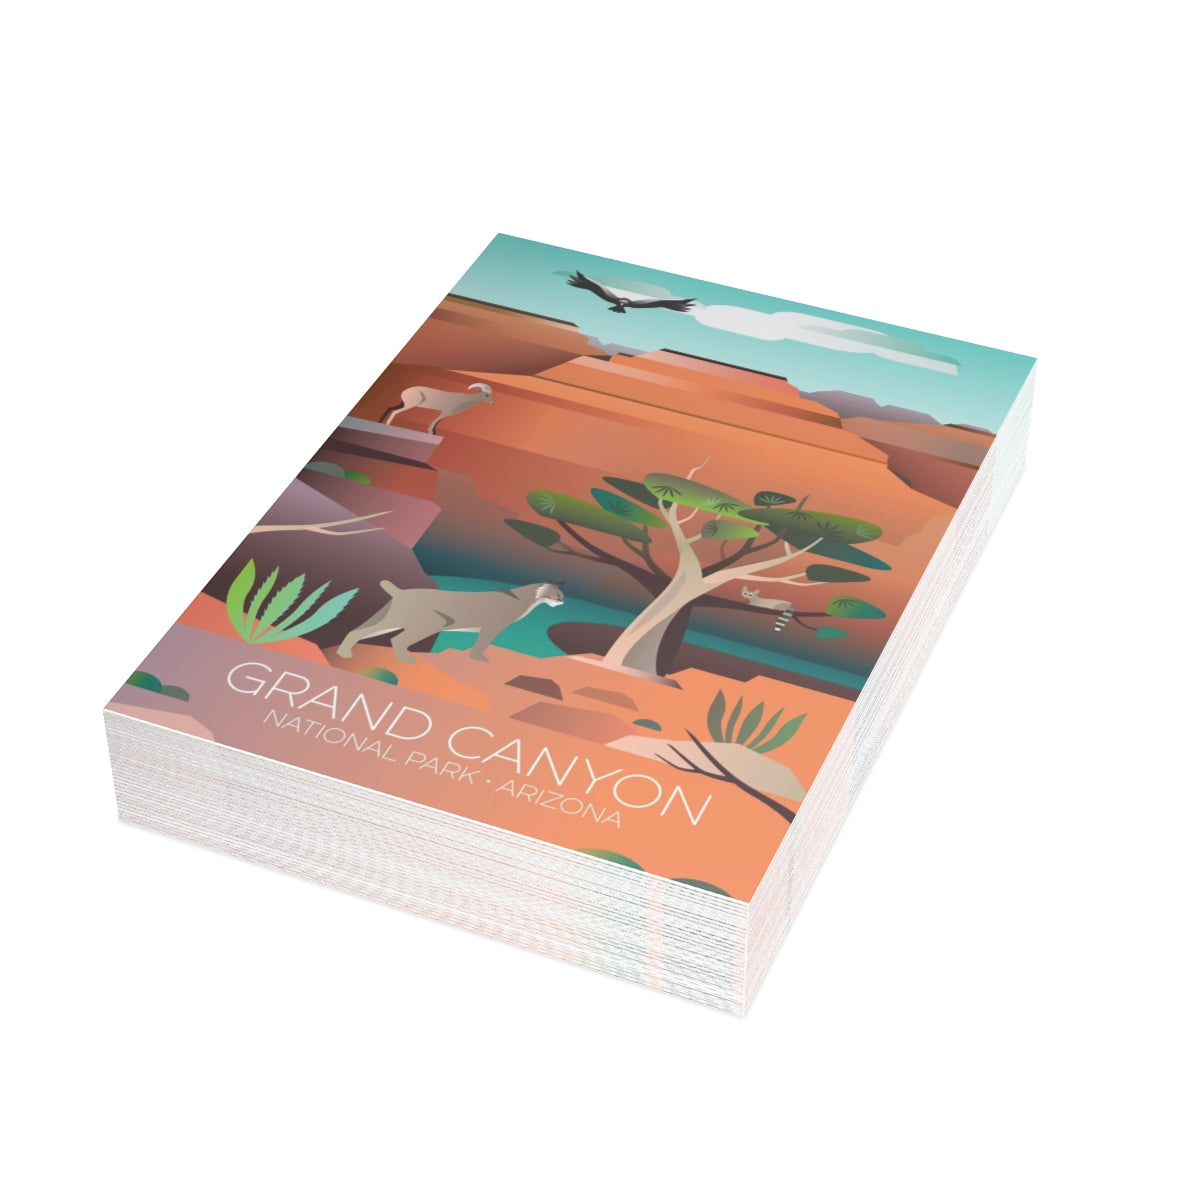 Grand Canyon Nationalpark, gefaltete, matte Notizkarten + Umschläge (10 Stück)